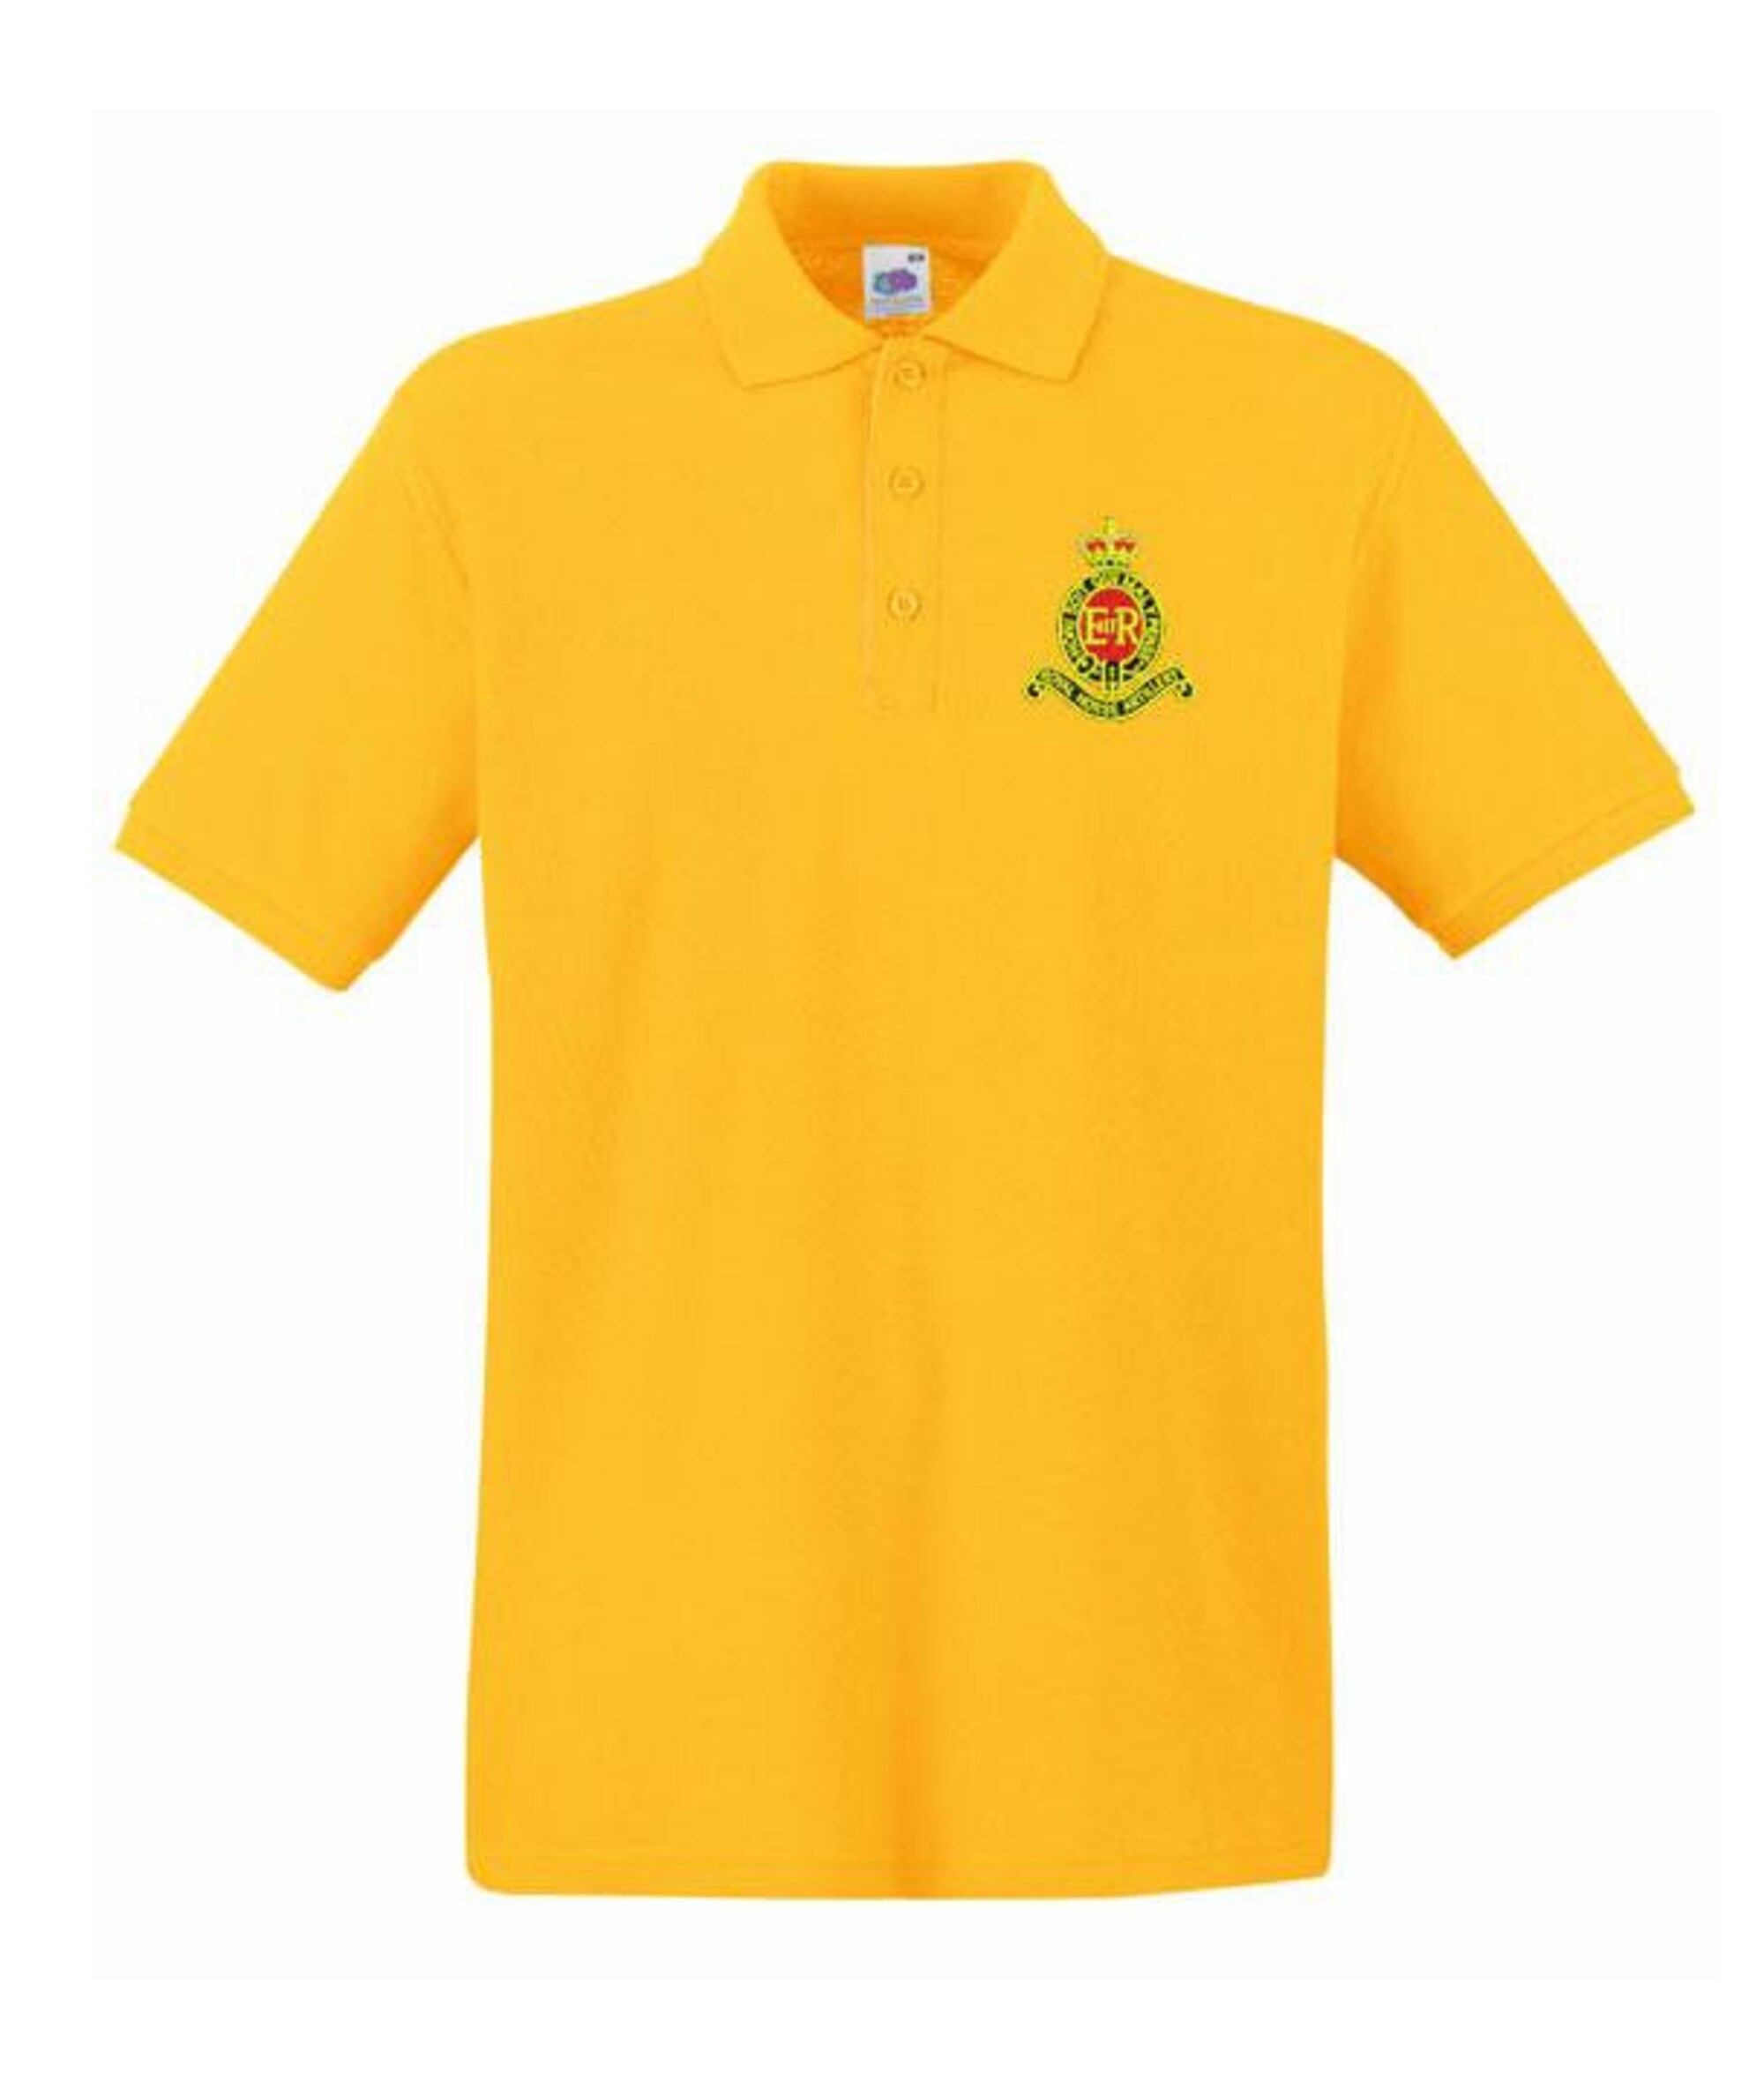 Royal Horse Artillery Embroidered Men's Polo Shirt